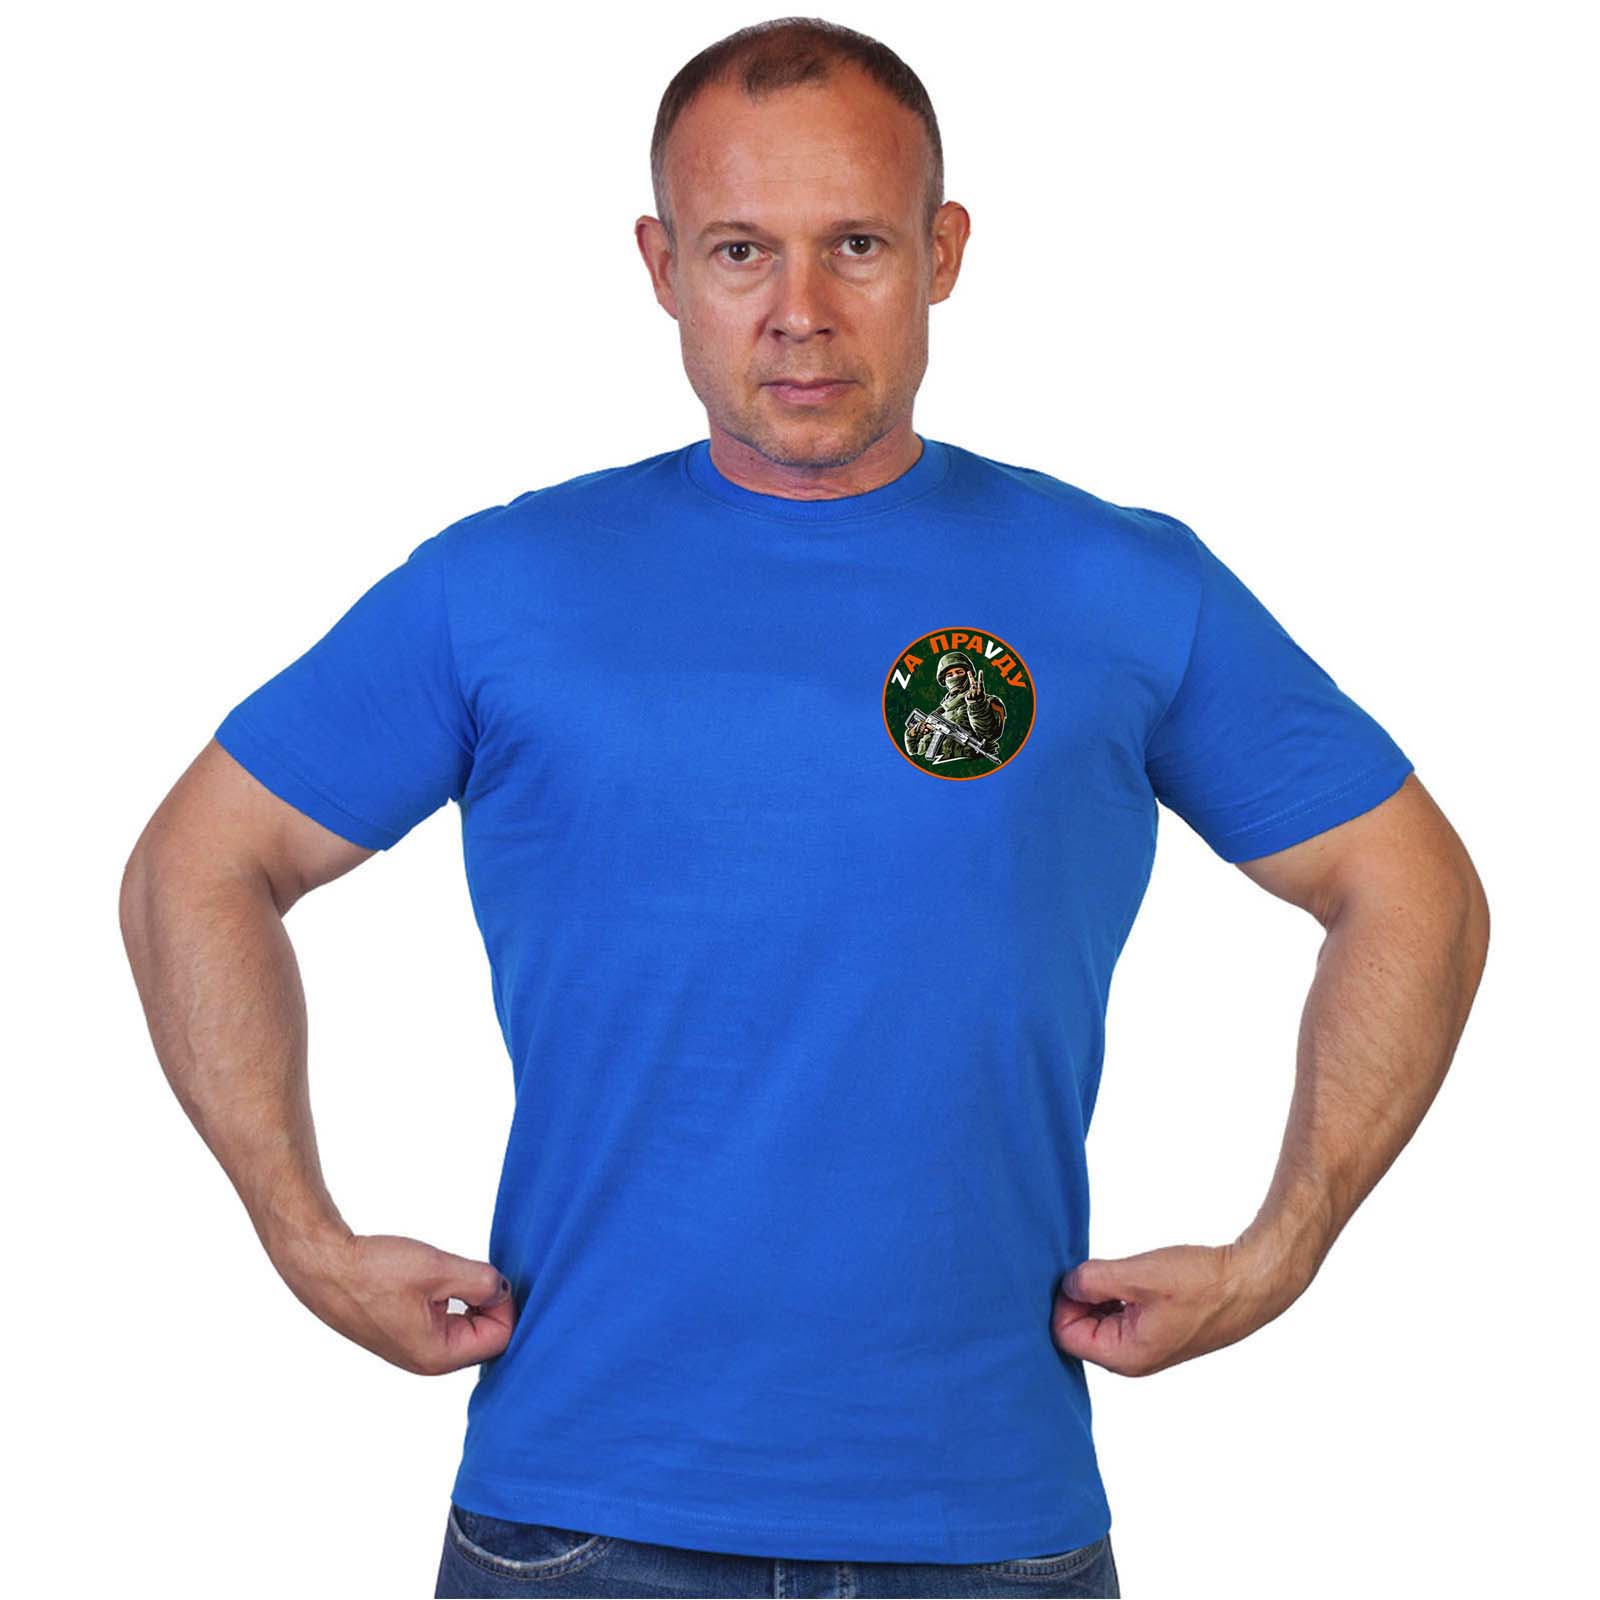 Васильковая футболка с термопринтом "Zа праVду"